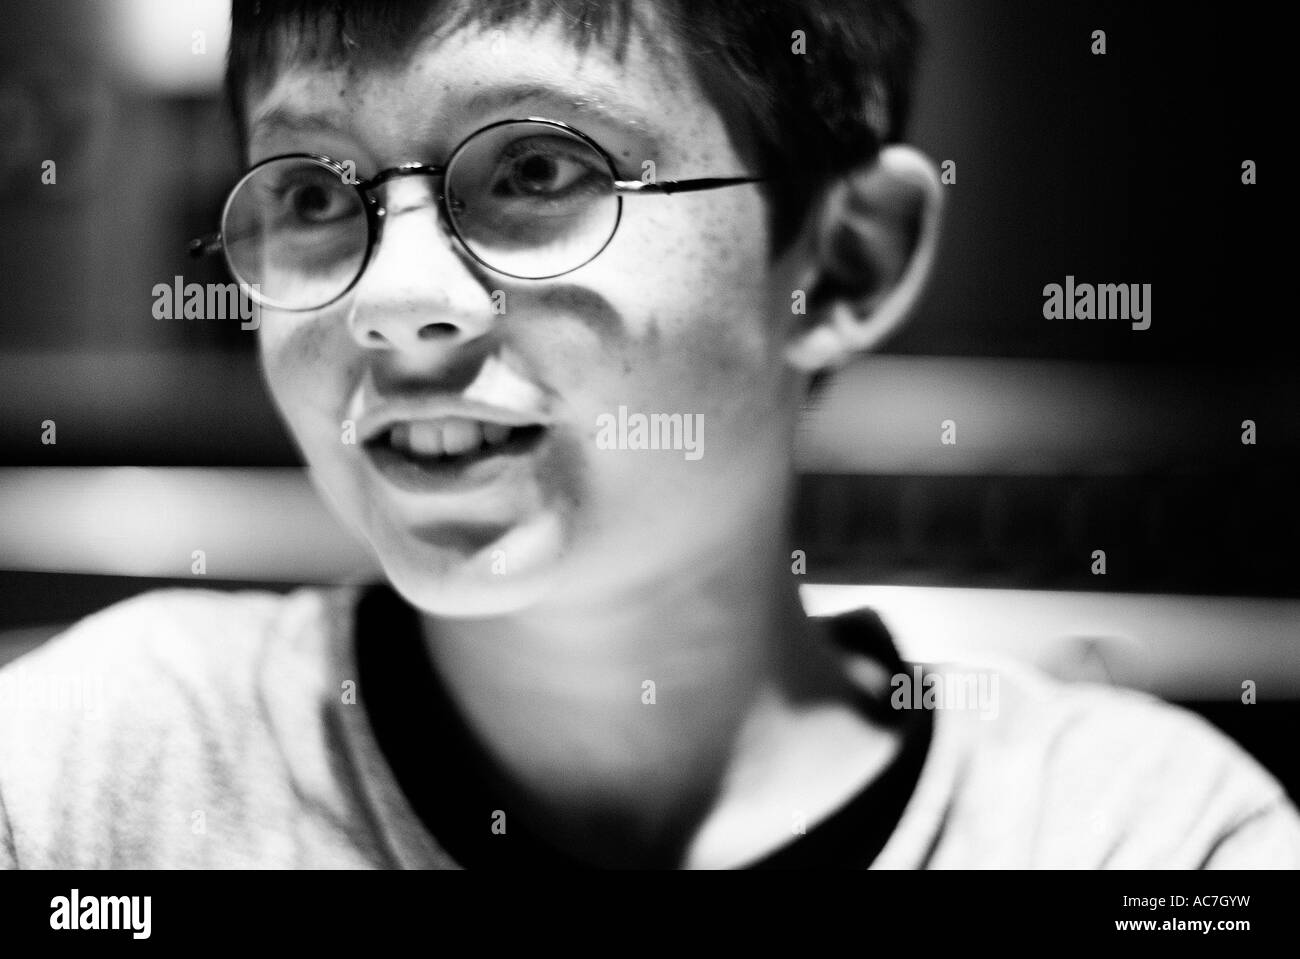 Portrait noir et blanc d'un jeune garçon souriant qui ressemble à Harry Potter Banque D'Images